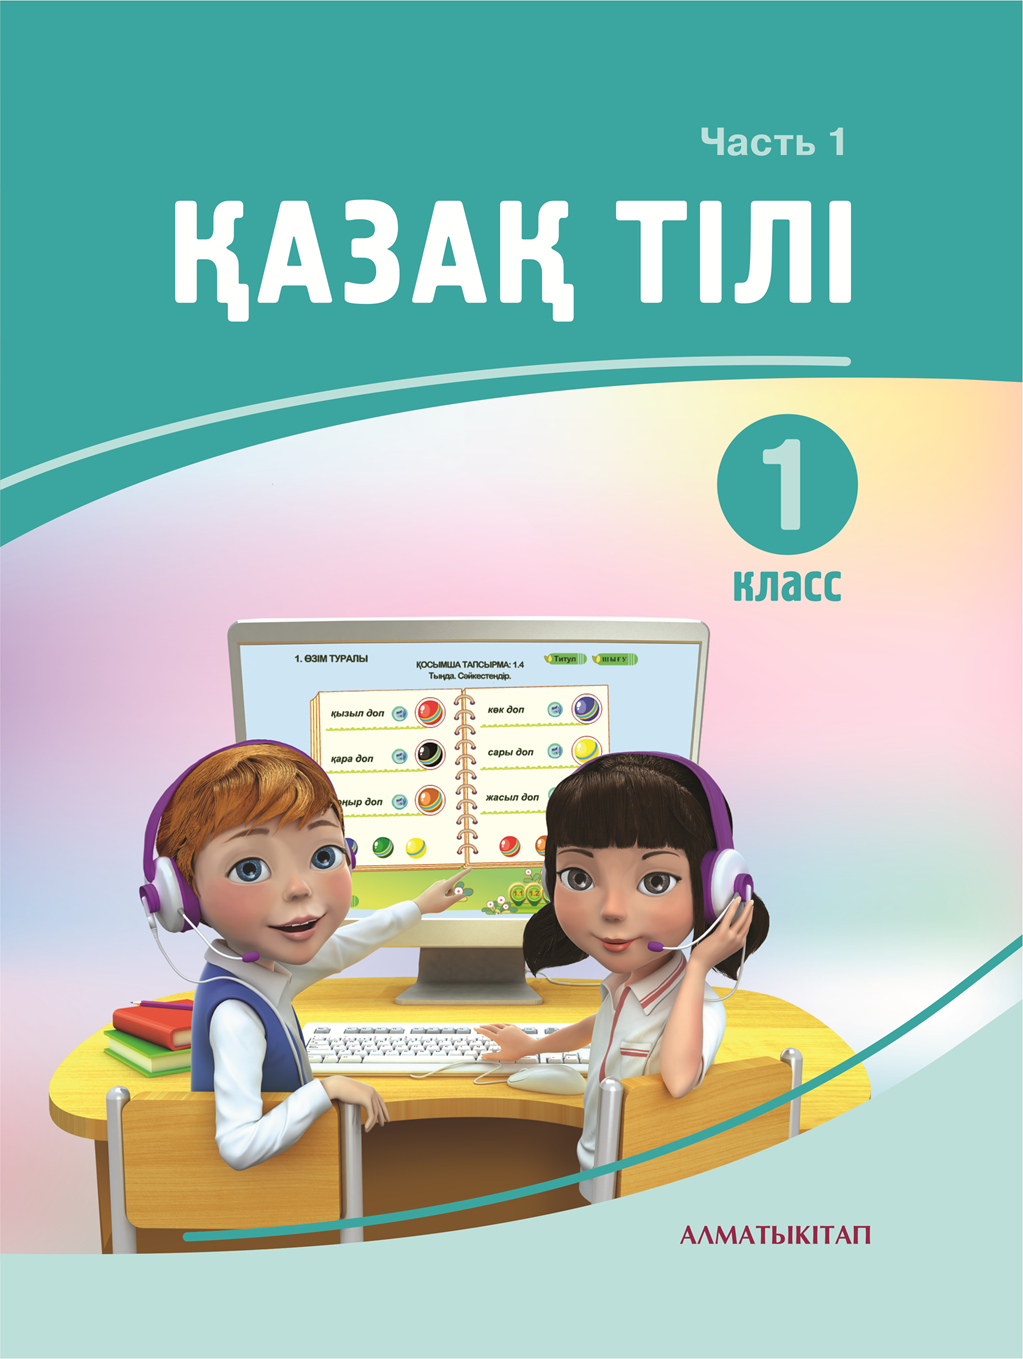 Казахский язык 4 класс 3 часть. Учебник казахского языка 1 класс. Книги по казахскому языку. Учебники 1 класс Казахстан. Казахский язык 1 класс.